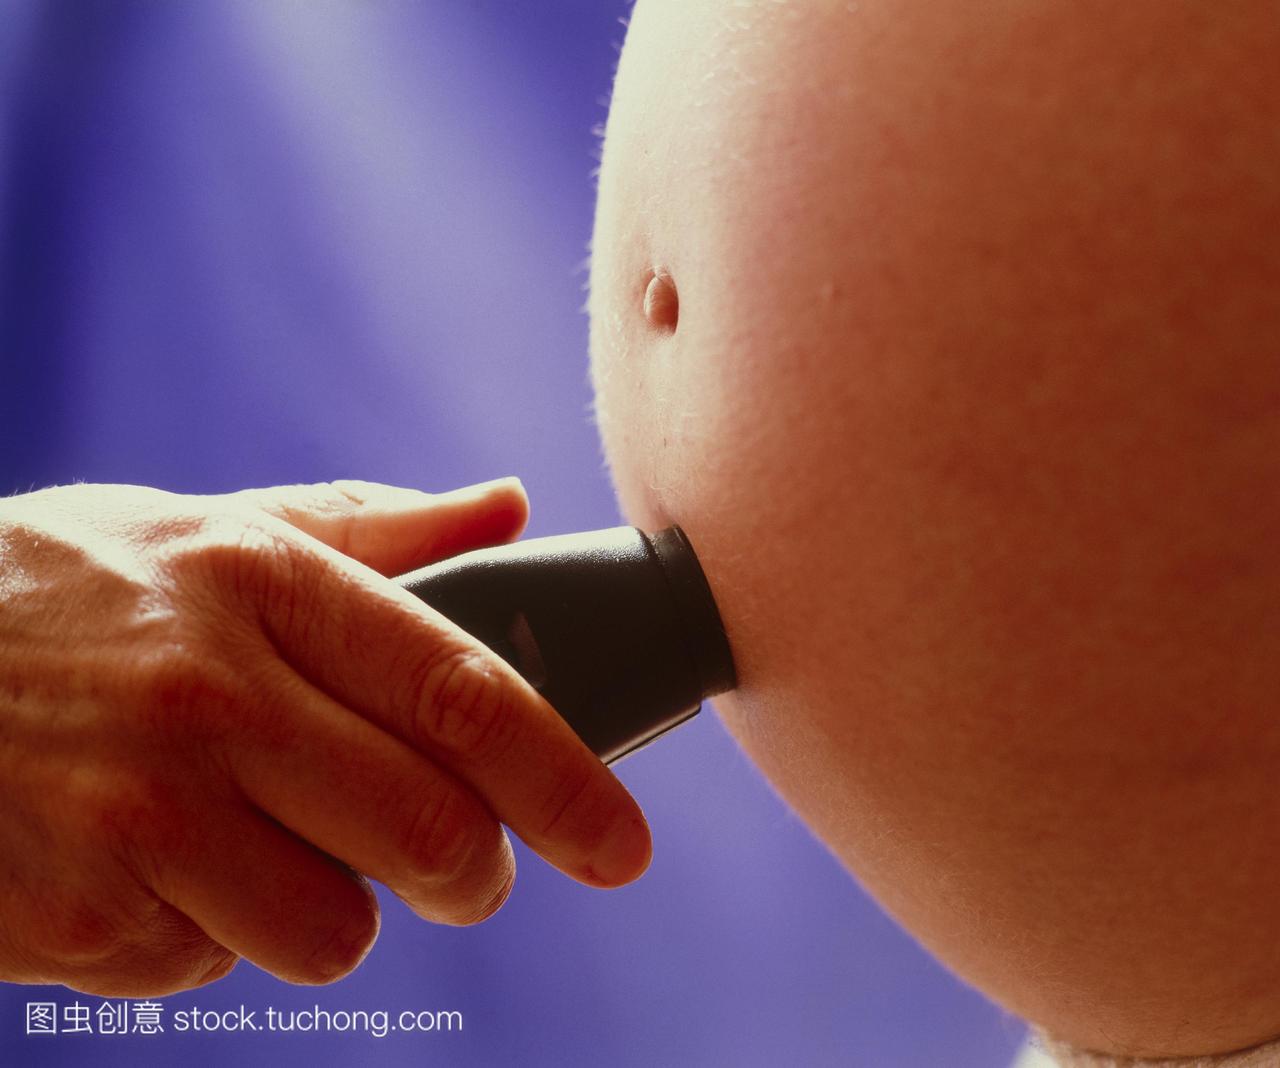 胎儿多普勒超声检查。牵手的换能器胎儿多普勒